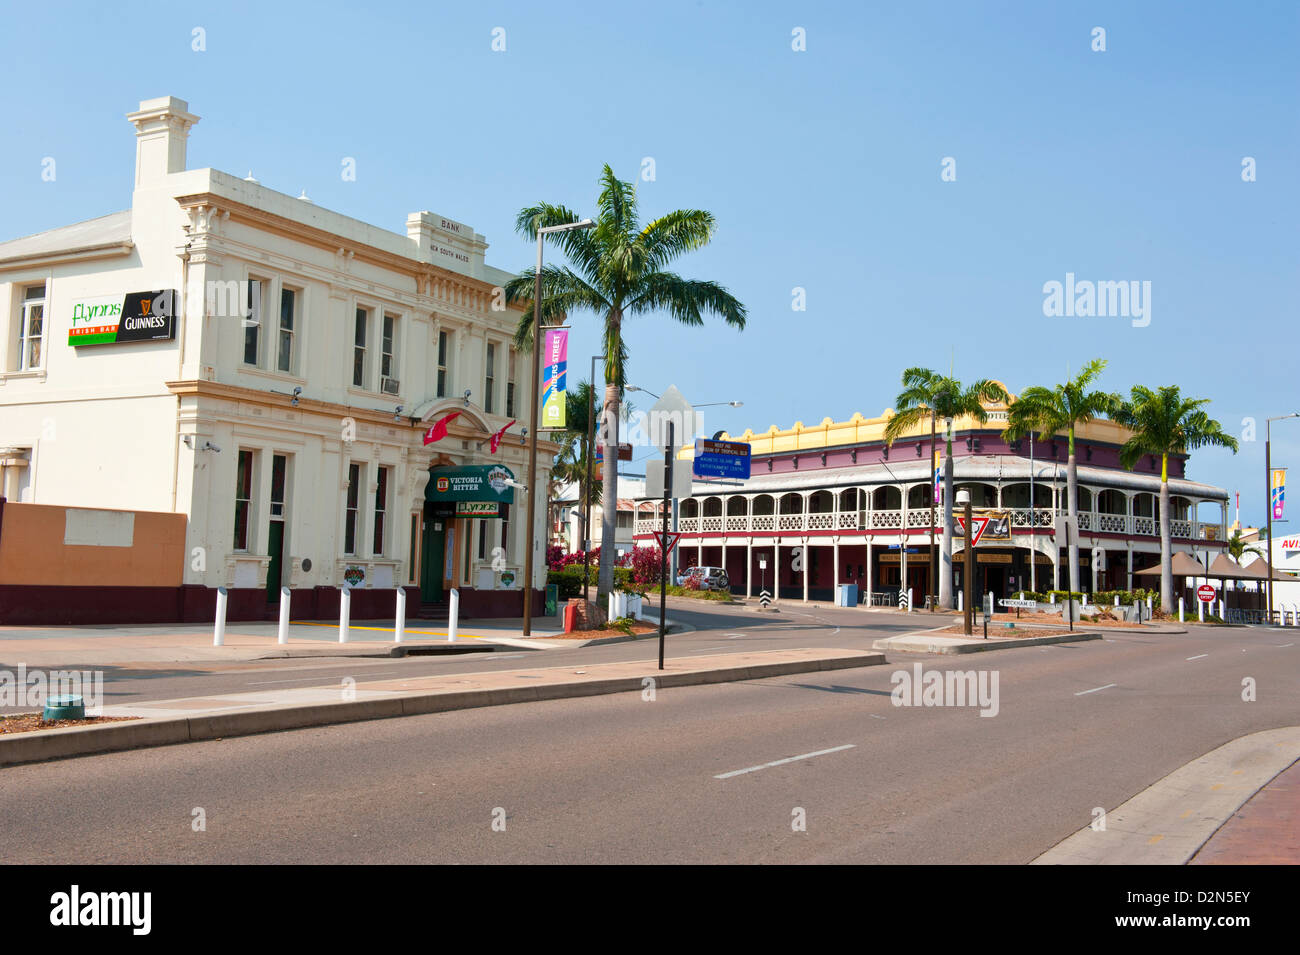 Die Innenstadt Von Townsville Queensland Australien Pazifik Stockfotografie Alamy